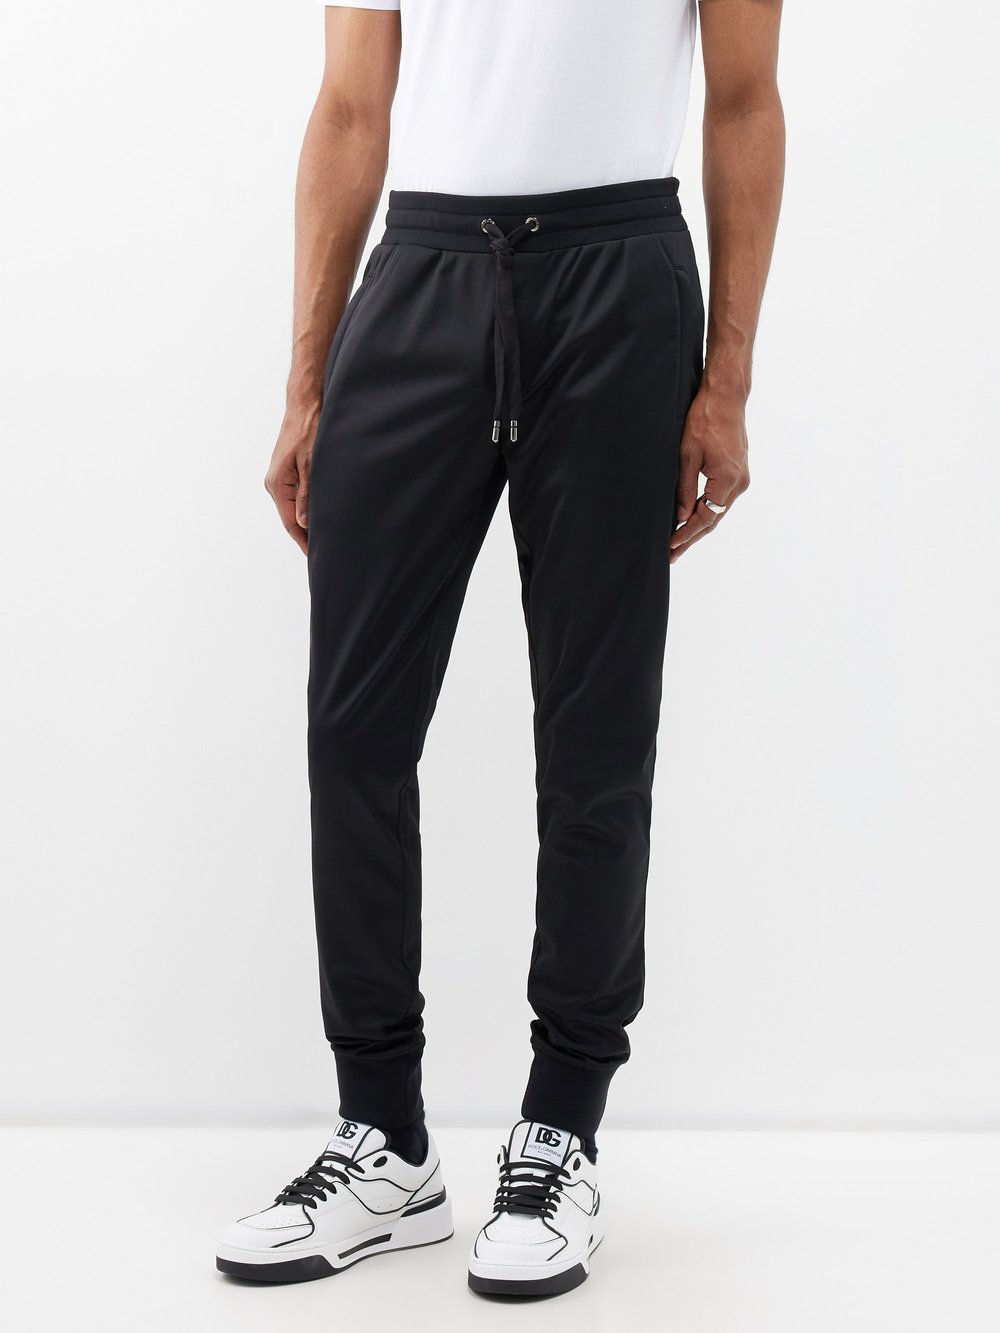 черные спортивные брюки с логотипом box dsquared2 черный Спортивные брюки из джерси с бляшкой-логотипом Dolce & Gabbana, черный